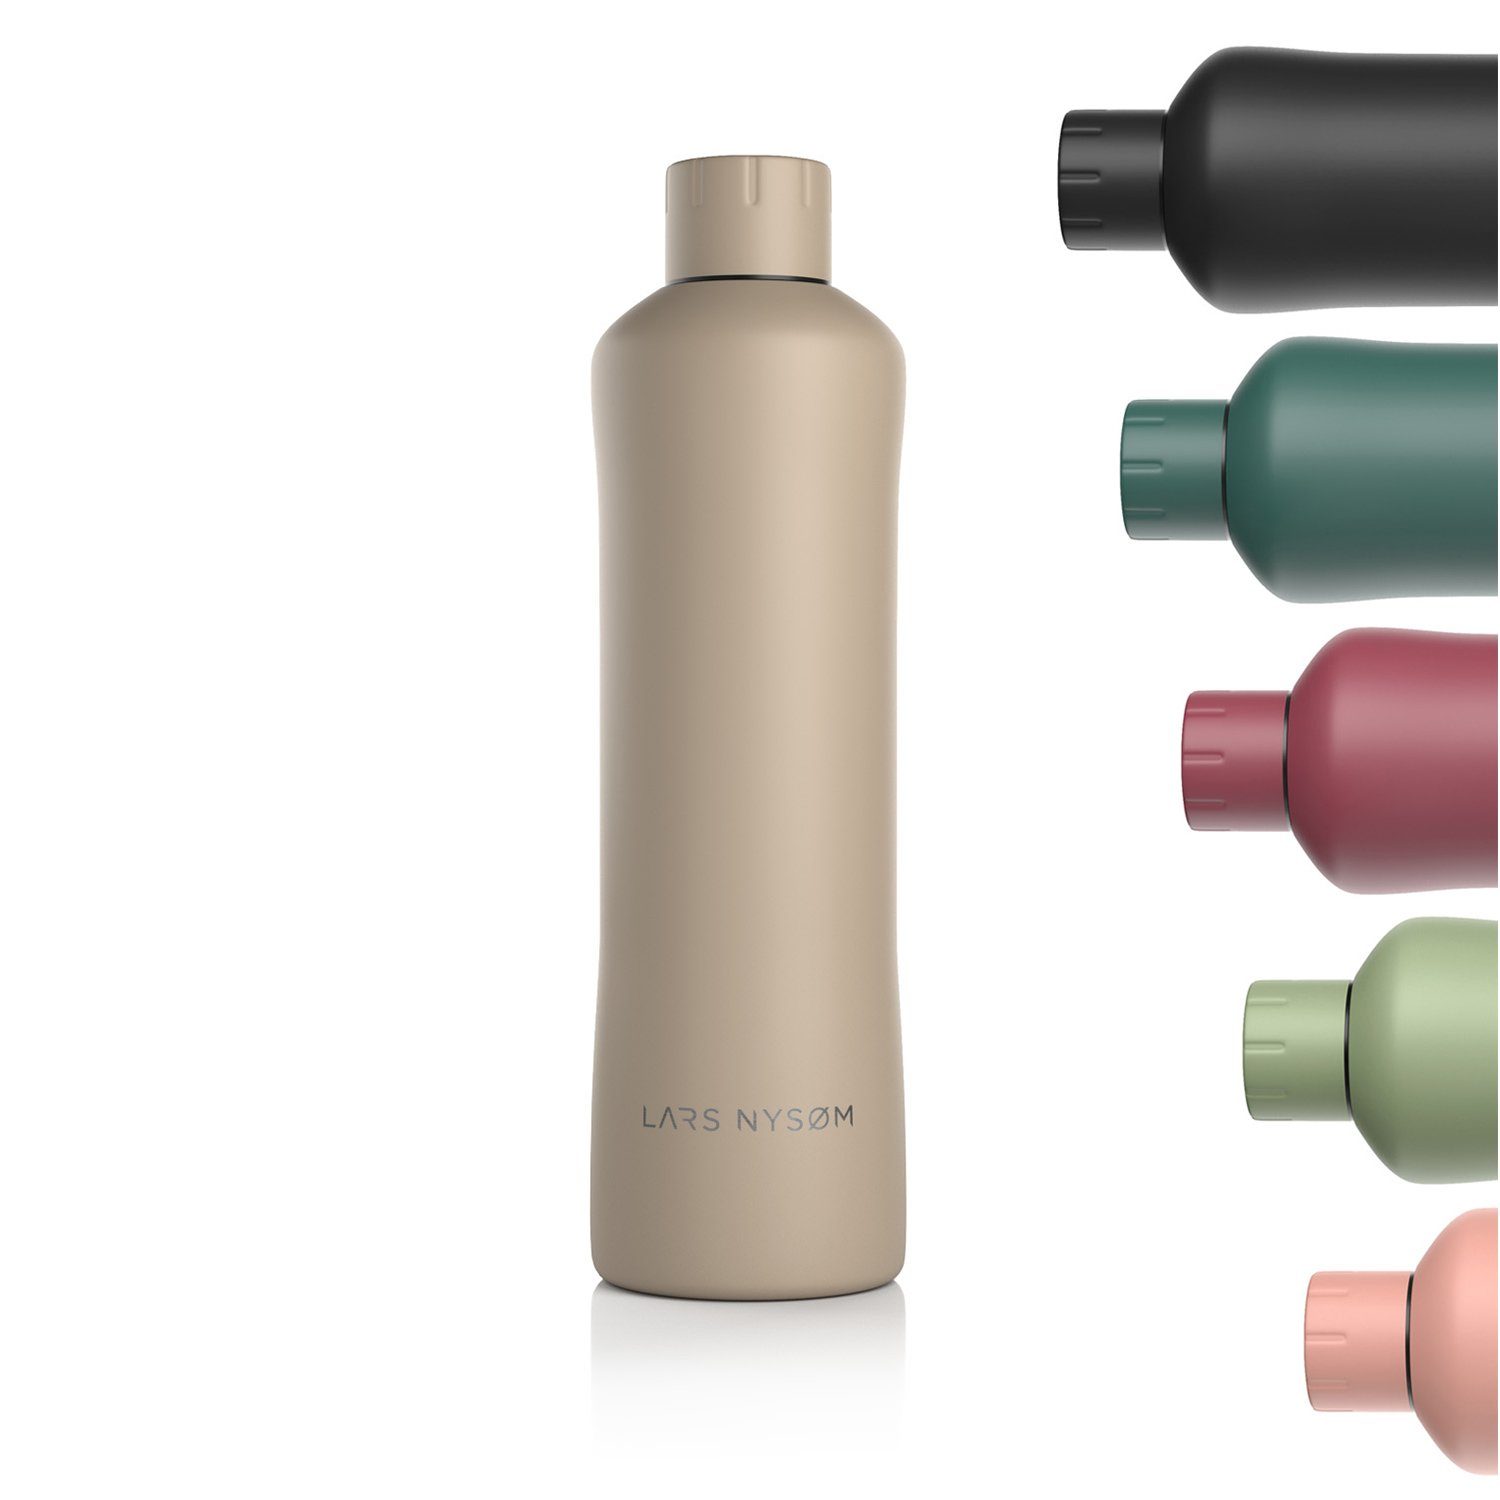 Bølge, geeignet BPA-Freie NYSØM Thermosflasche LARS Isolierflasche Greige Kohlensäure